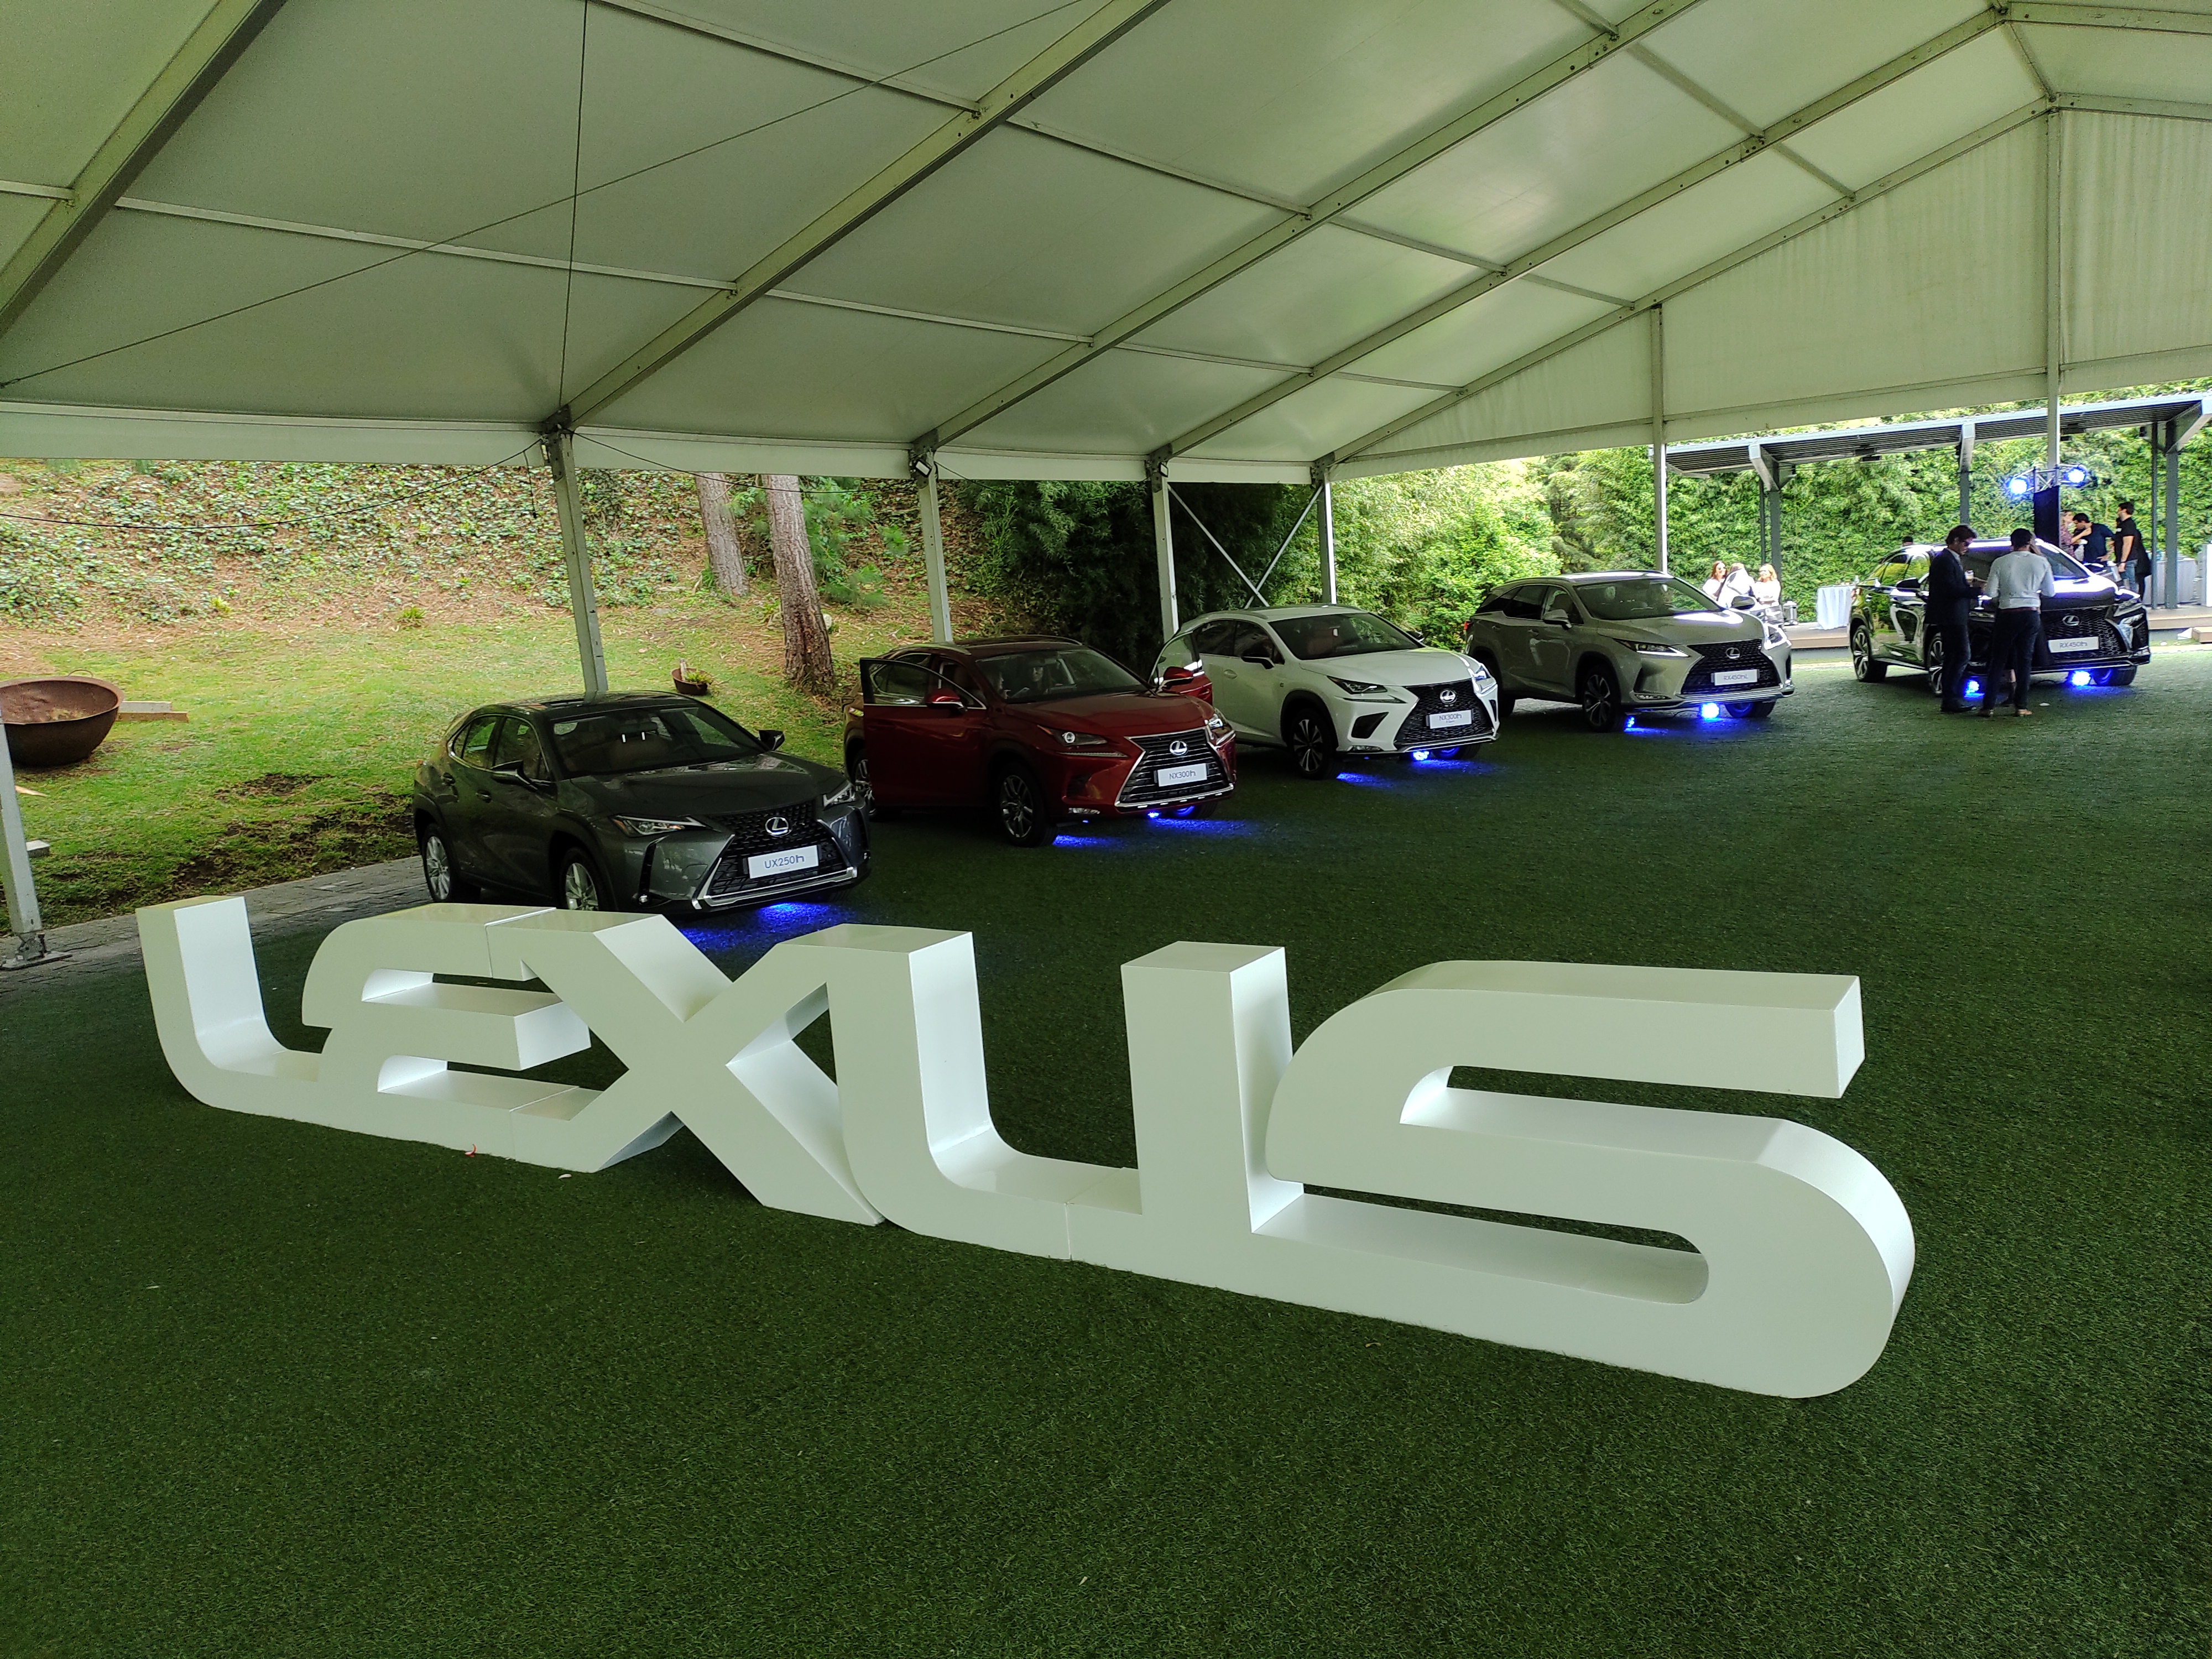 Lexus presentó sus vehículos híbridos autorrecargables, Lexus Hybrid Drive, con los modelos RX450h, RX450hL, NX300h, F- Sport, NX300h y UX250h. Foto Prensa Libre: Norvin Mendoza